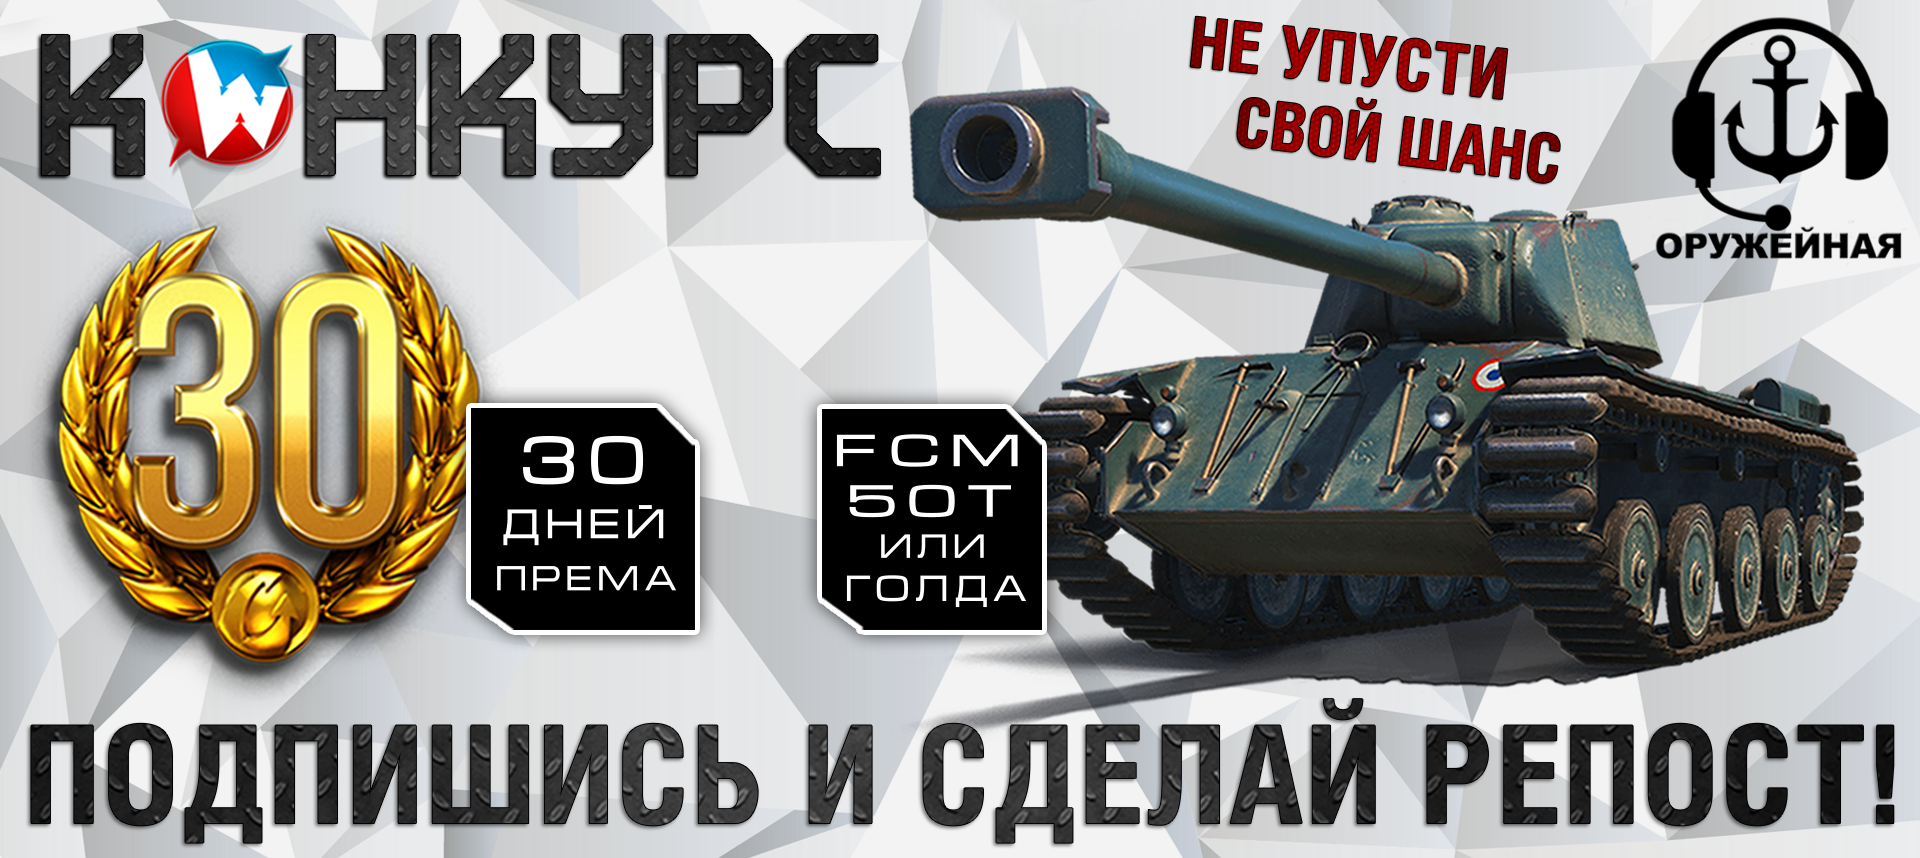 FCM 50t  30     -    